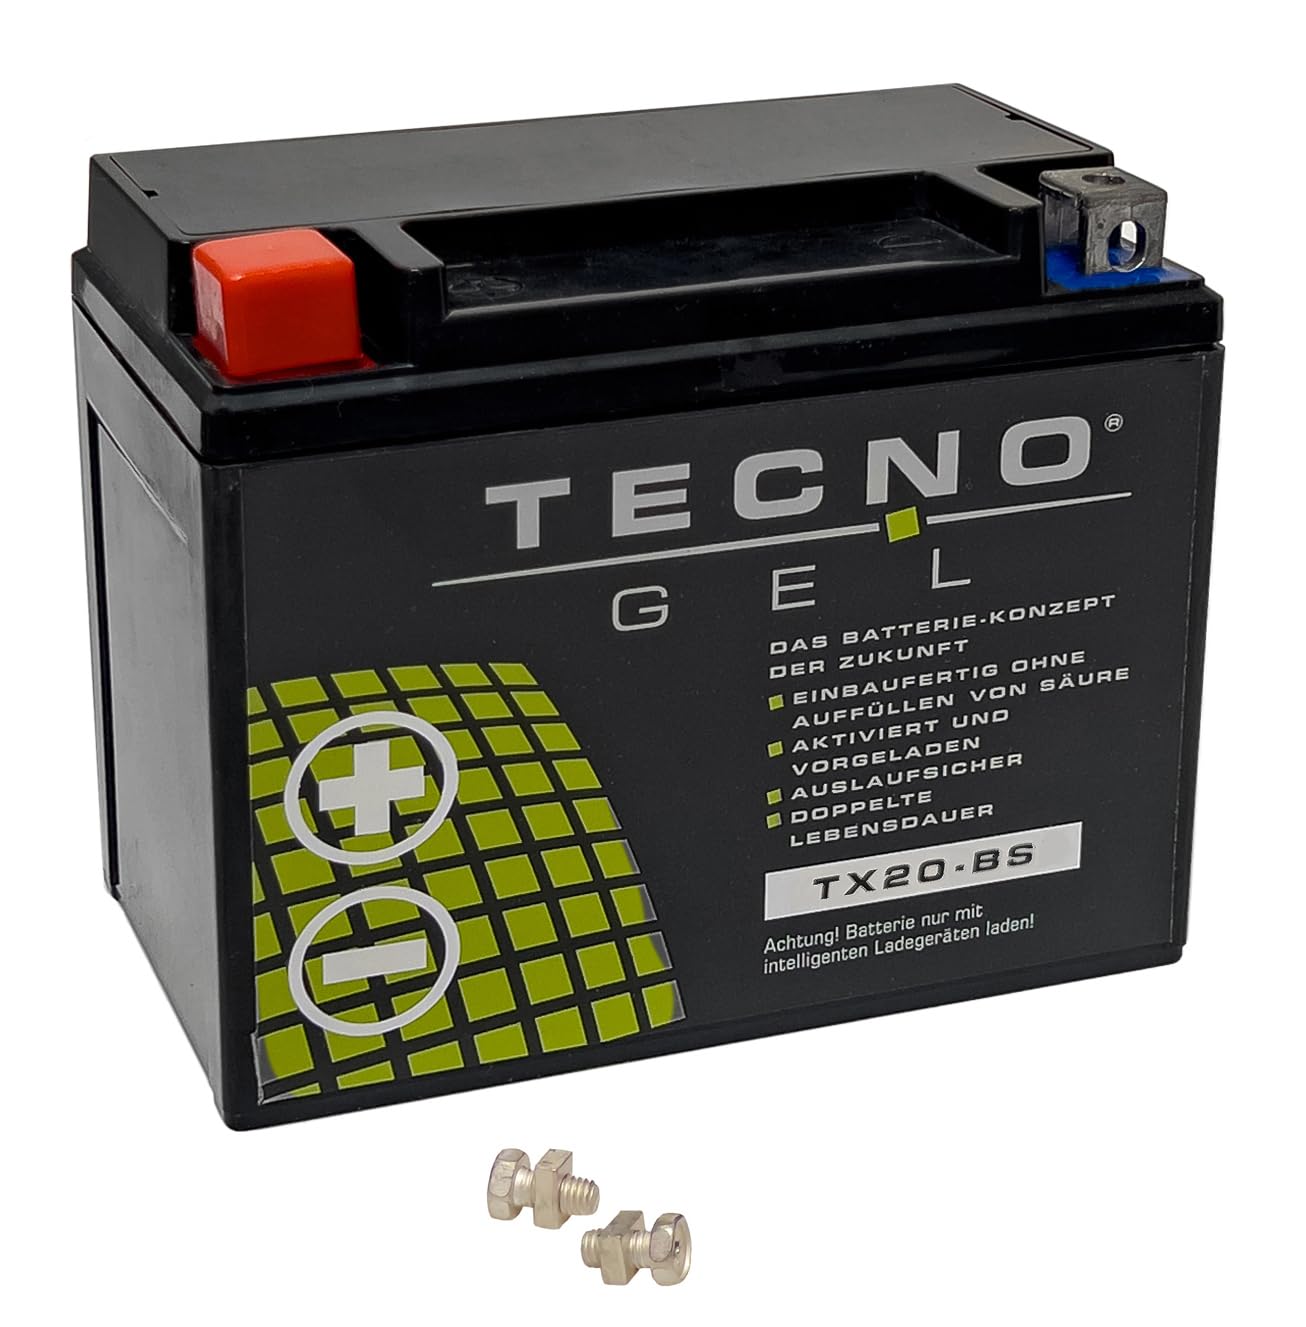 TECNO GEL Qualitäts Motorrad-Batterie für YTX20-BS für HARLEY DAVIDSON XLH 1000/1100/1200 Sportster 1979-1995, 12V Gel-Batterie 18Ah, 175x87x155 mm von Wirth-Federn